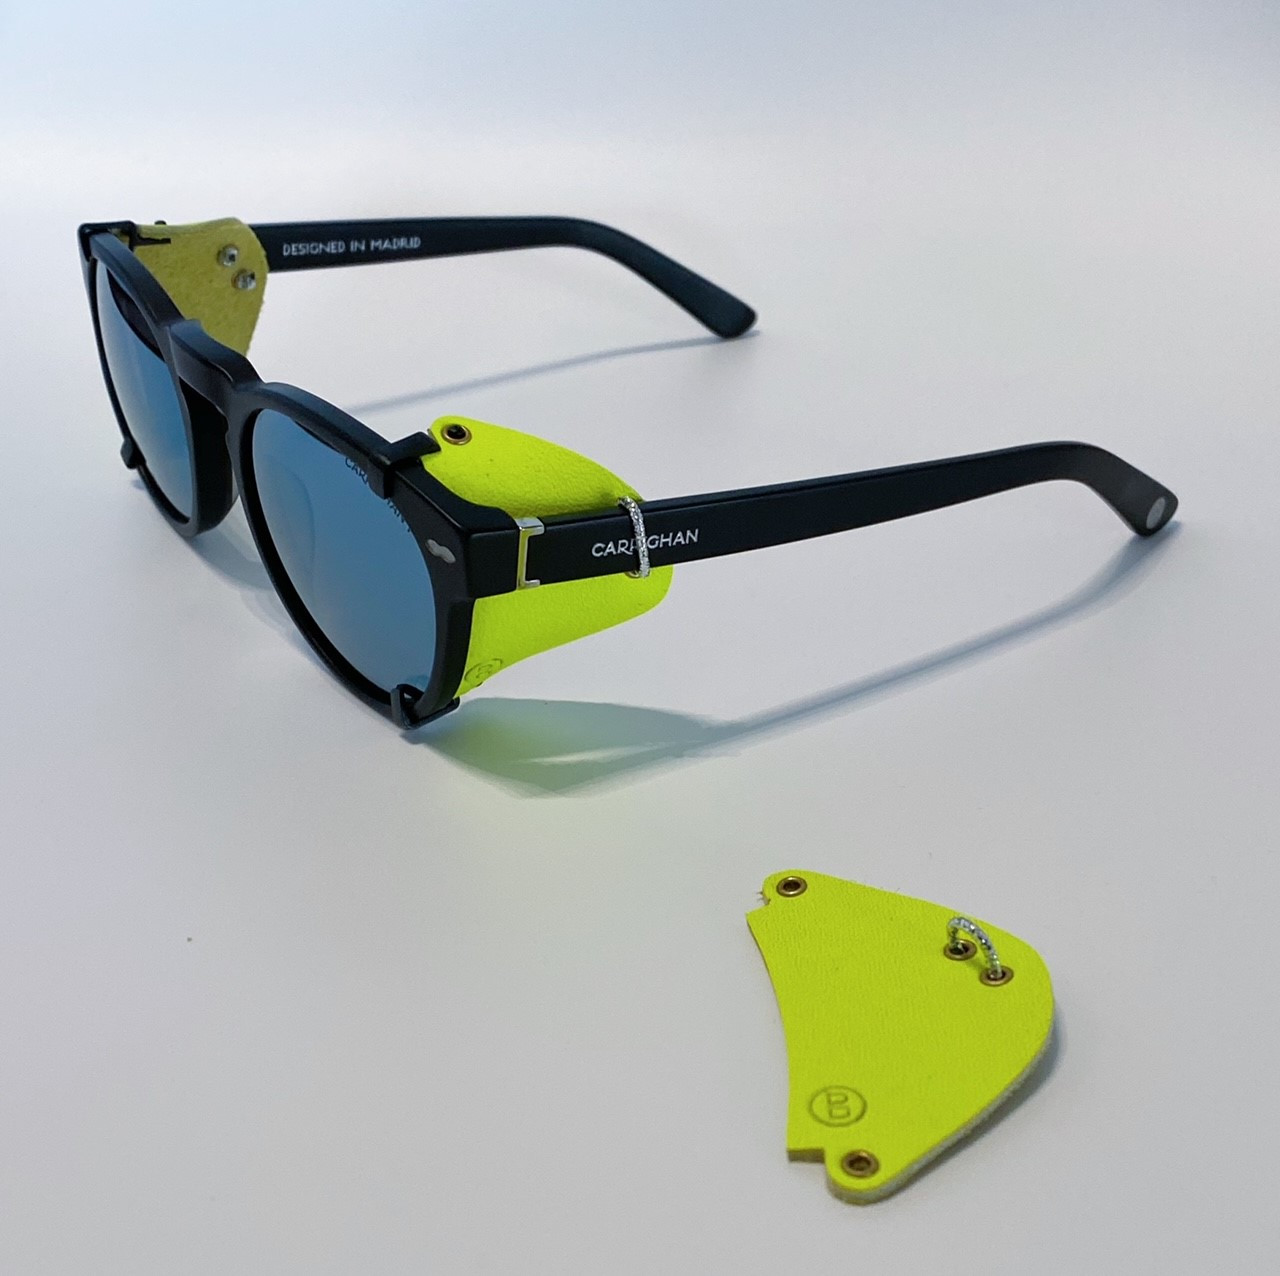 Blinkset side shields for sunglasses, Fluor model.